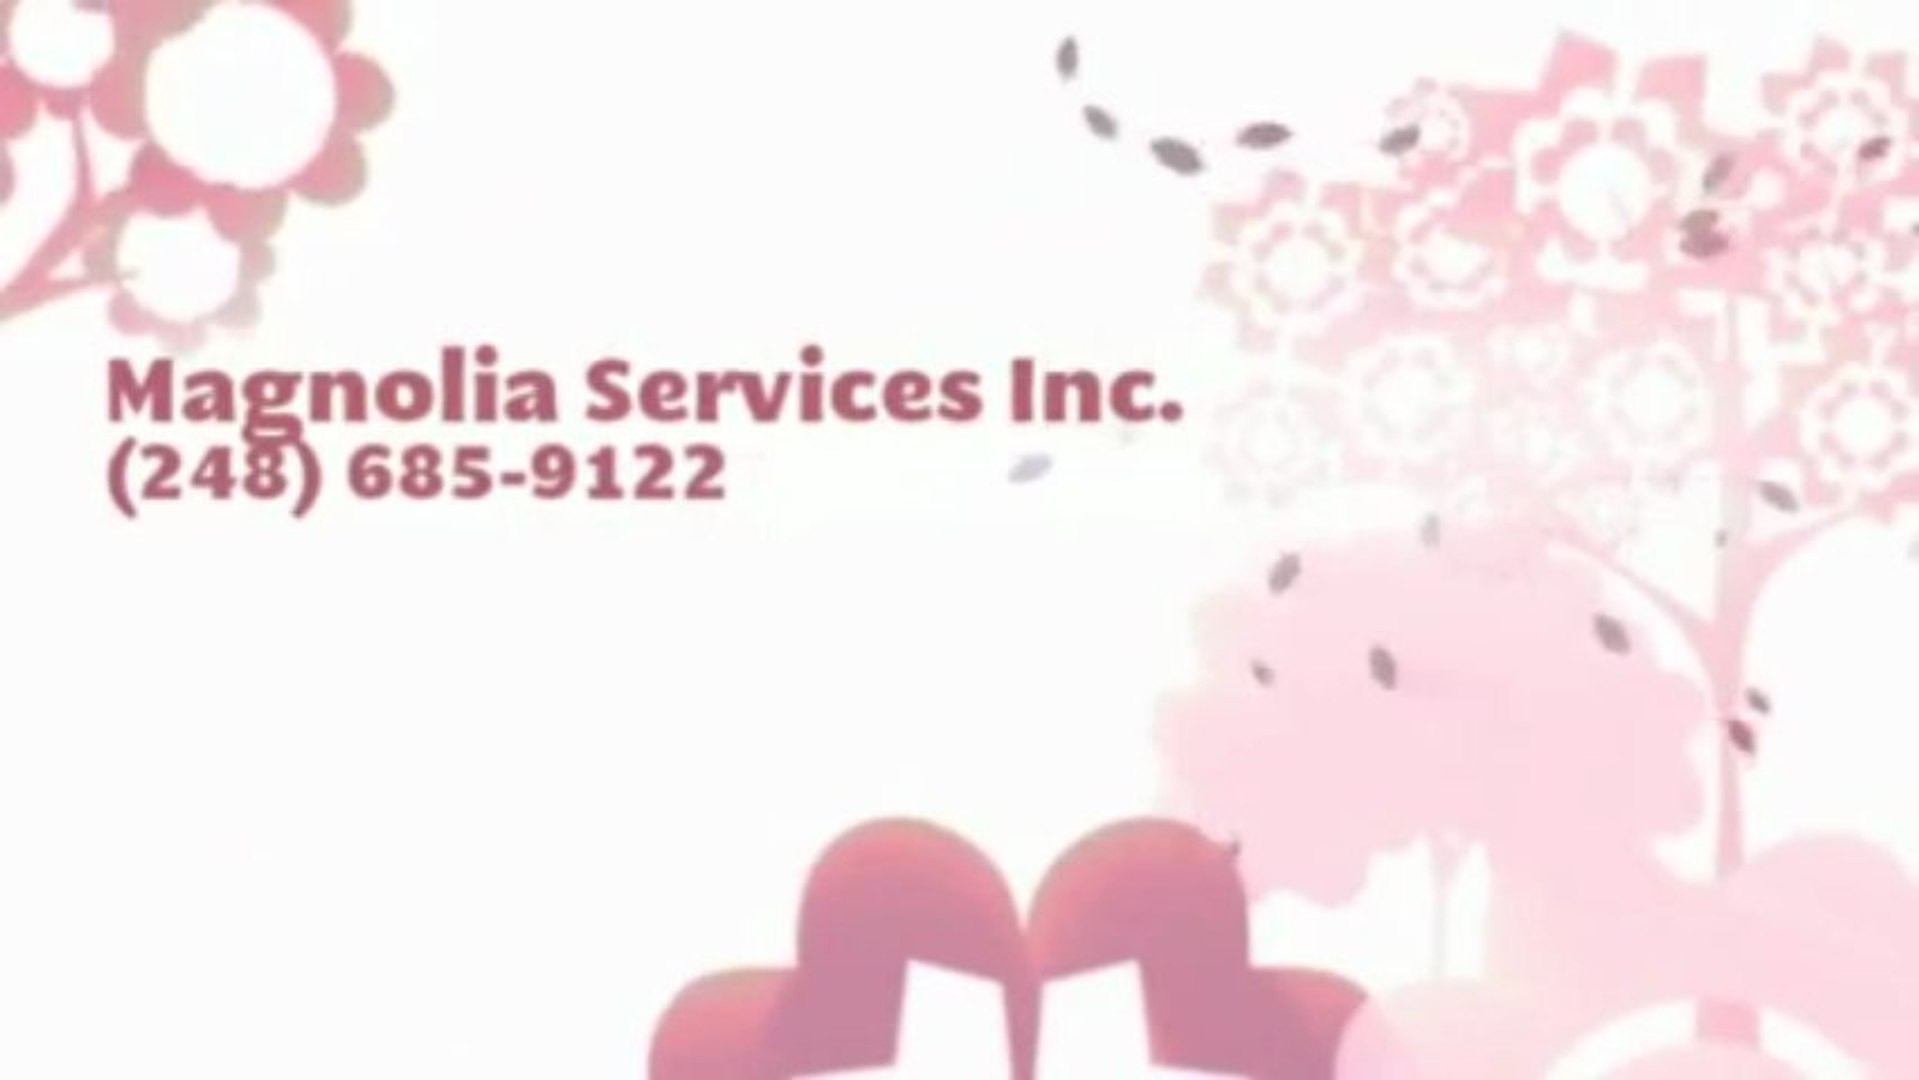 Magnolia Services Inc. (248) 685-9122